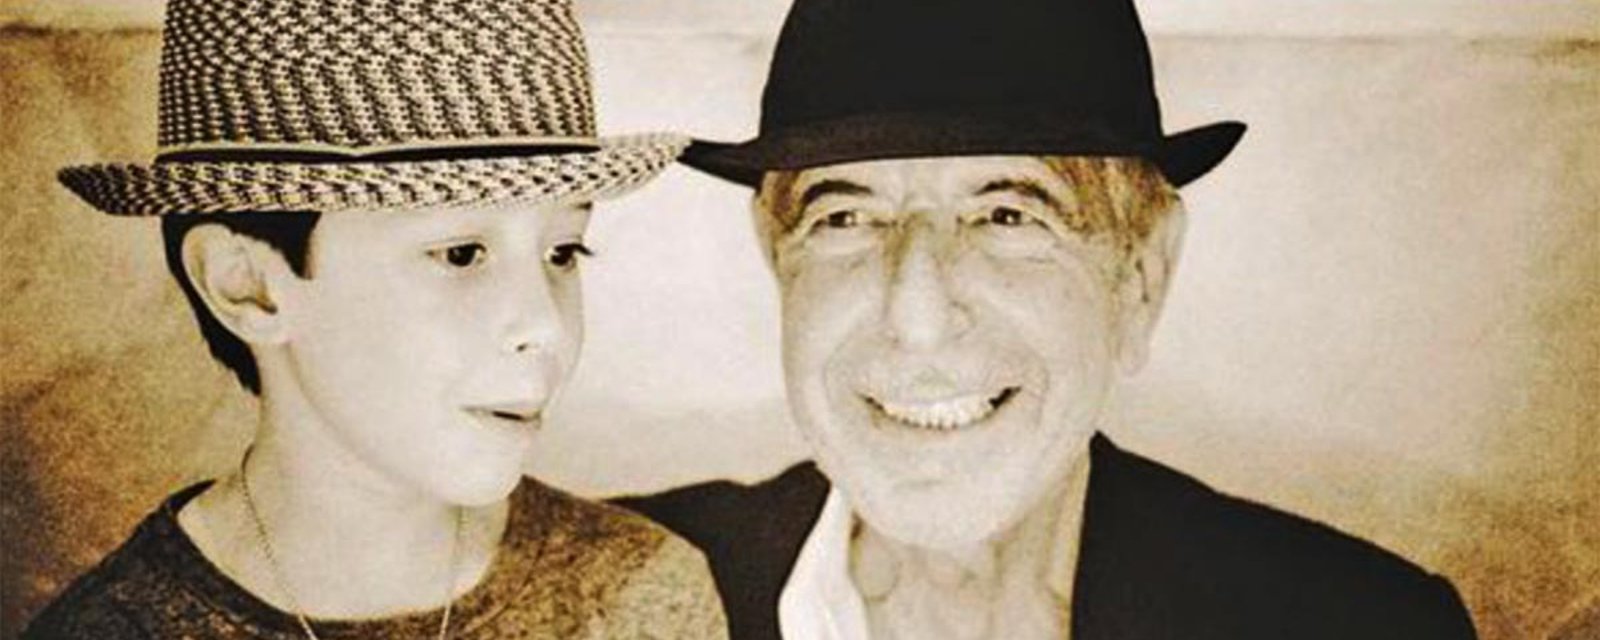 Le fils de Leonard Cohen publie une émouvante photo sur Facebook... et un message bouleversant!